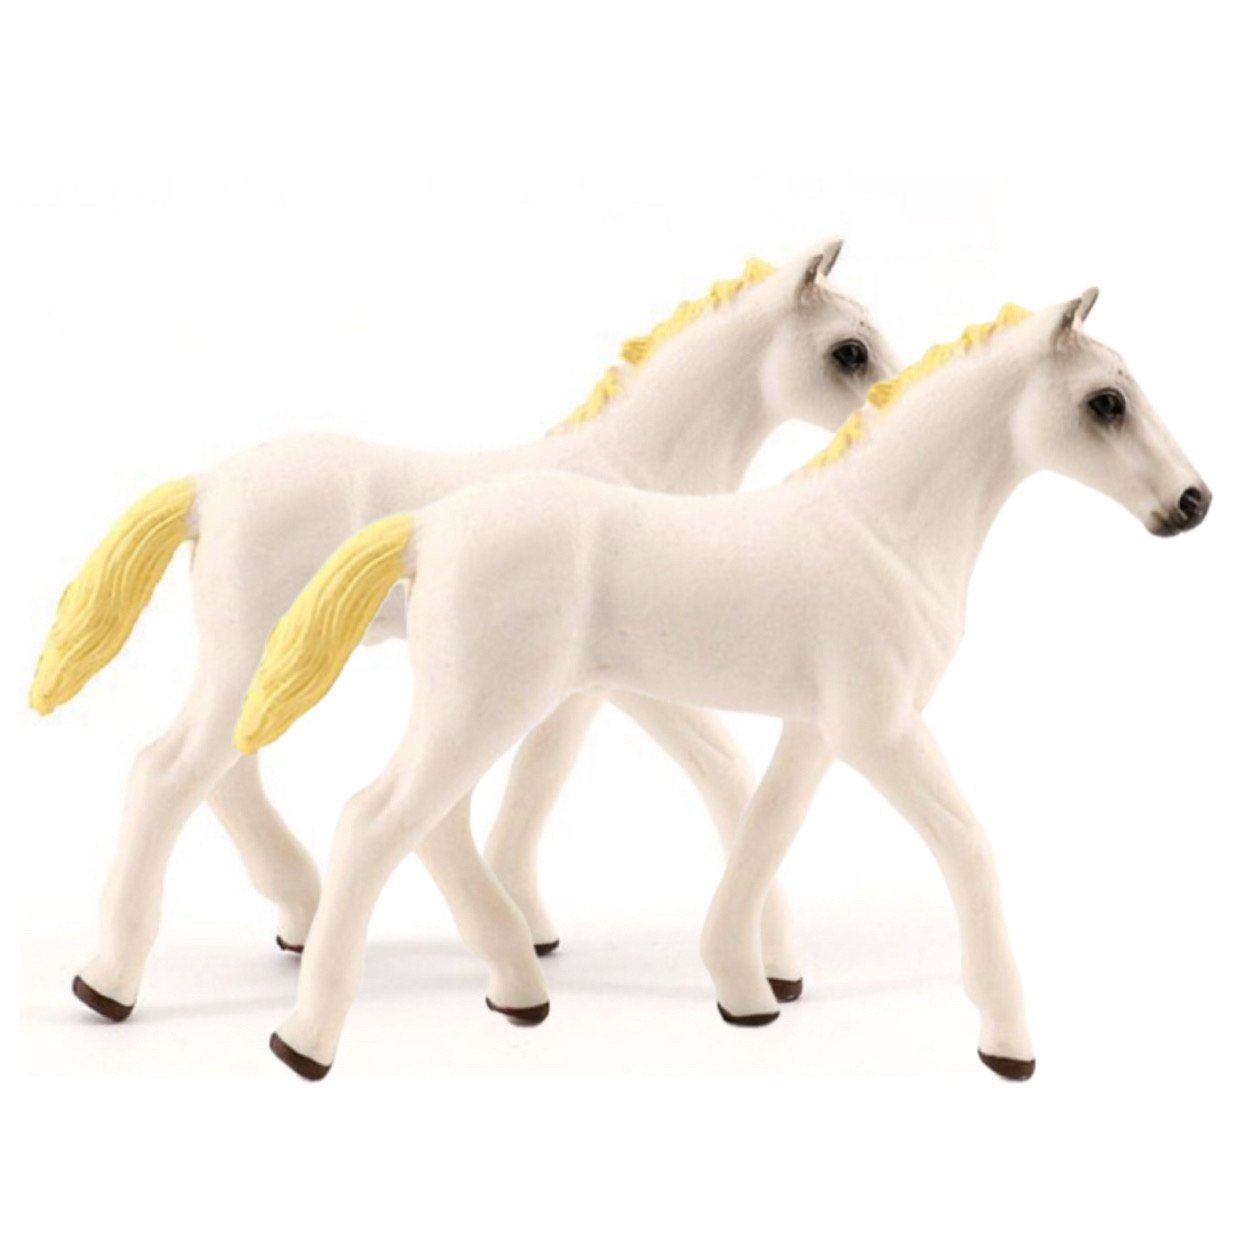 SCRTD Tierfigur Tierfiguren, 2 Stück Pferd Figuren Ornamente,Kinderspielzeug, Simulation Tiermodell,Kinderspielzeug,für Kinder